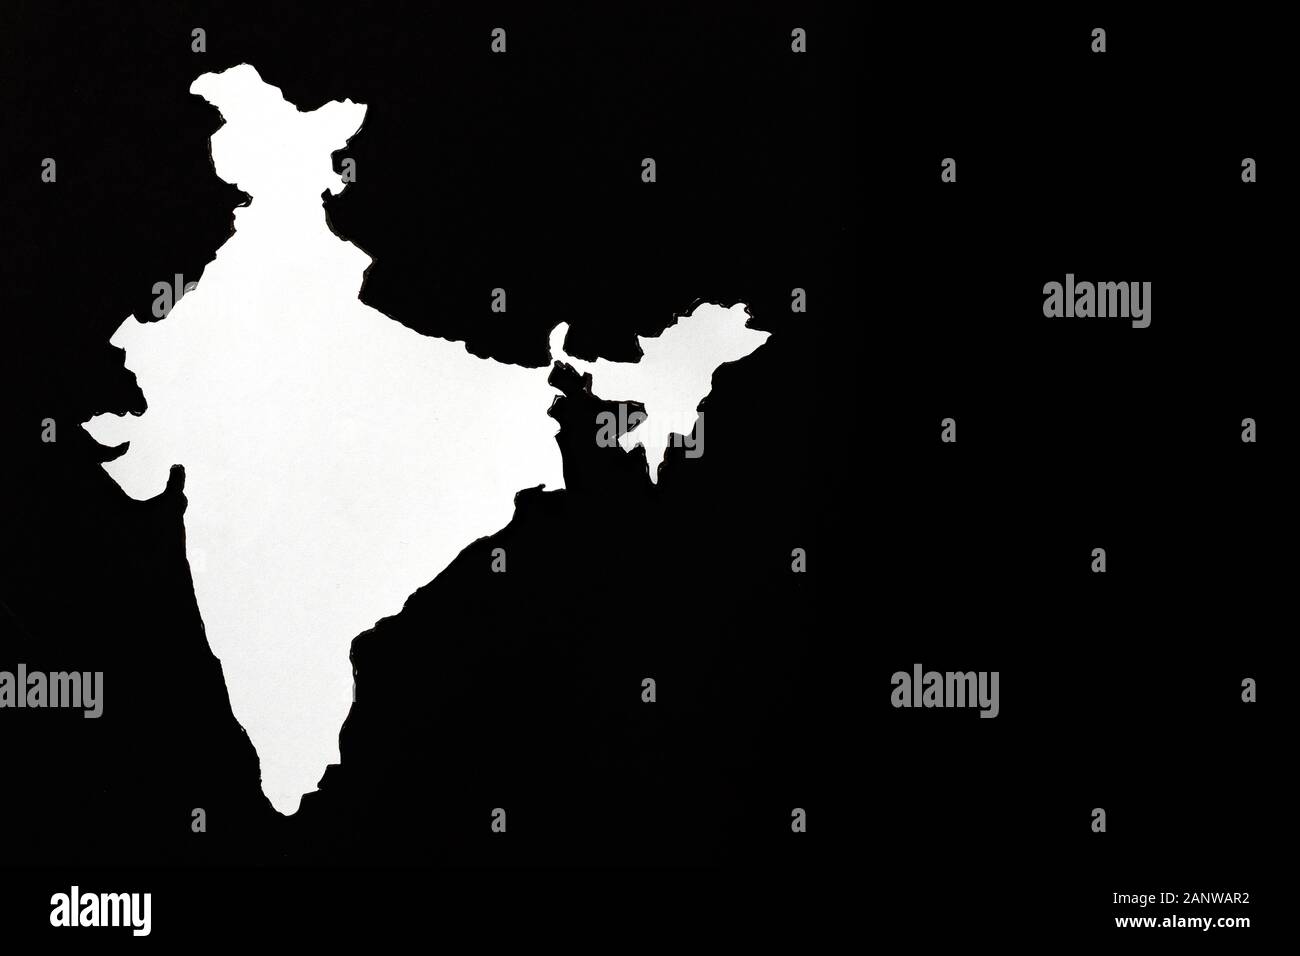 Bản đồ Ấn Độ màu trắng trên nền đen (Indian map white black background): Nếu bạn là một người yêu thích đồ họa, hãy cùng xem bản đồ Ấn Độ màu trắng trên nền đen vô cùng độc đáo. Với màu sắc tinh tế, hình ảnh này sẽ giúp bạn tìm hiểu về địa lý và văn hóa của đất nước này.